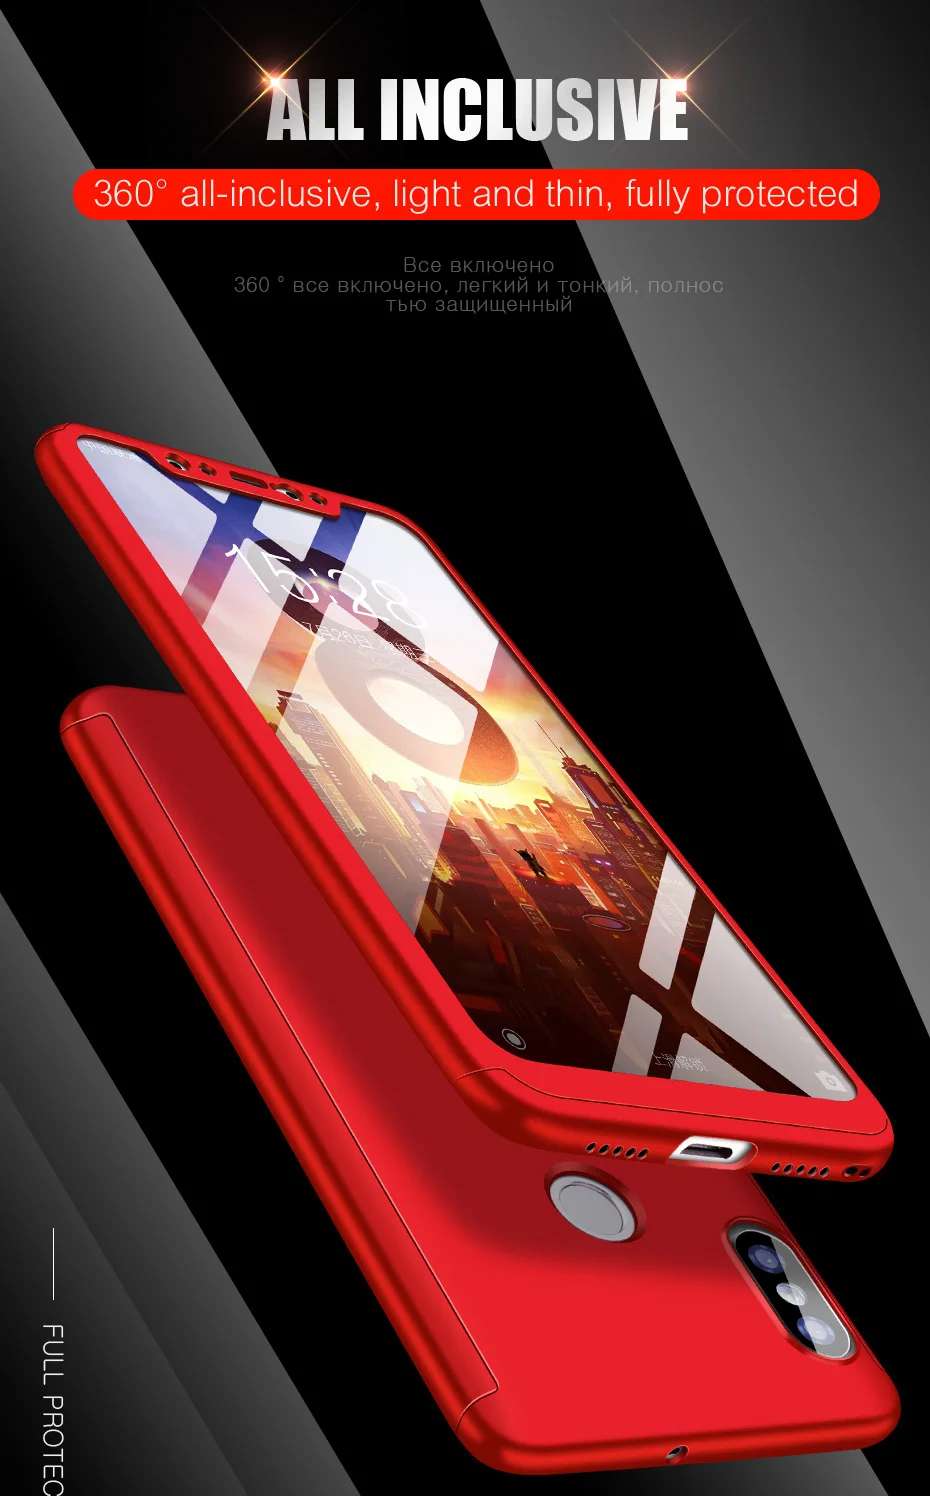 Чехол на 360 градусов для Xiao mi Red mi 5 Plus 7 5A 4X mi 9 F1 A2 lite полный чехол s для Red mi Note 8 5 6 7 pro Чехол для телефона оболочка